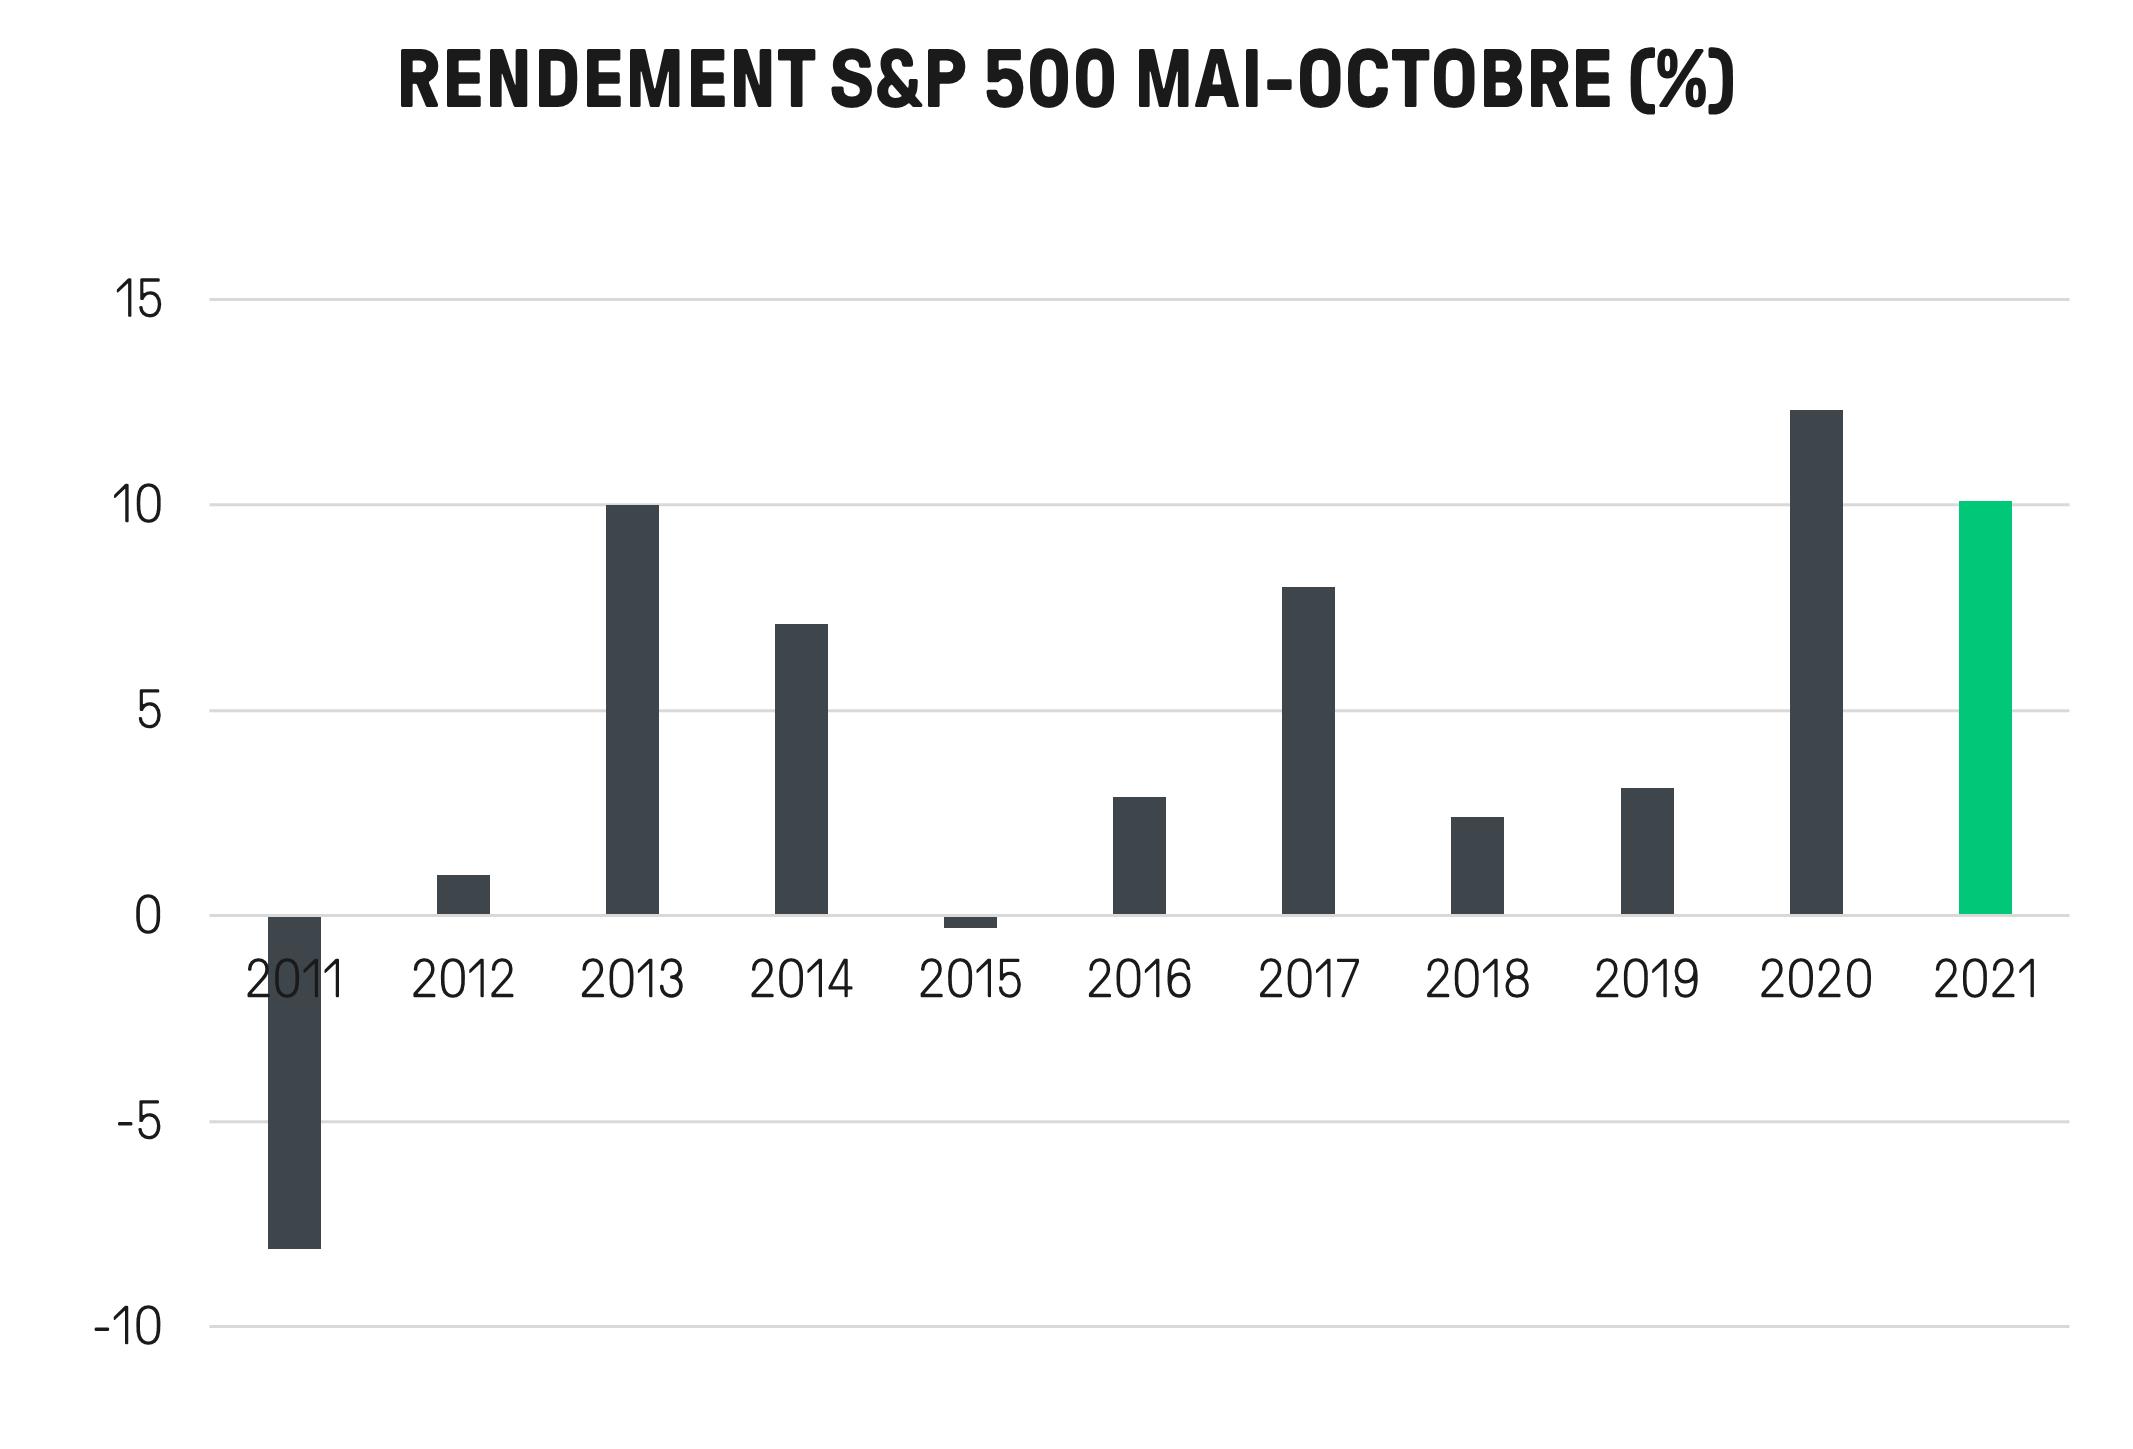 vente actions – vendre actions - rendement S&P mai octobre